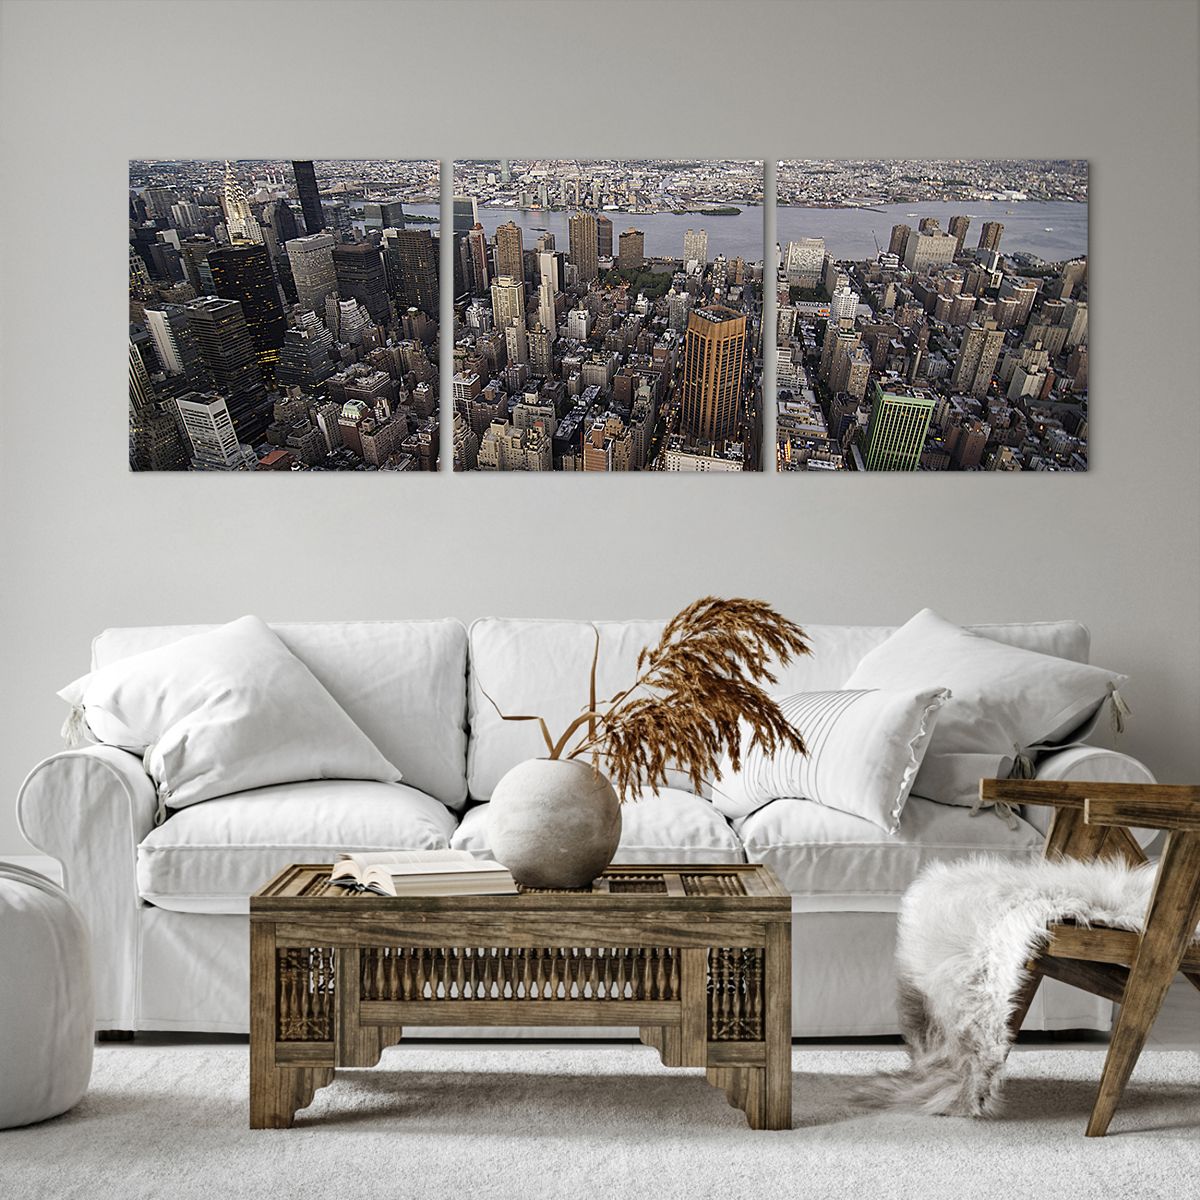 Bild auf Leinwand Stadt, Bild auf Leinwand New York, Bild auf Leinwand Manhattan, Bild auf Leinwand Die Architektur, Bild auf Leinwand Metropole